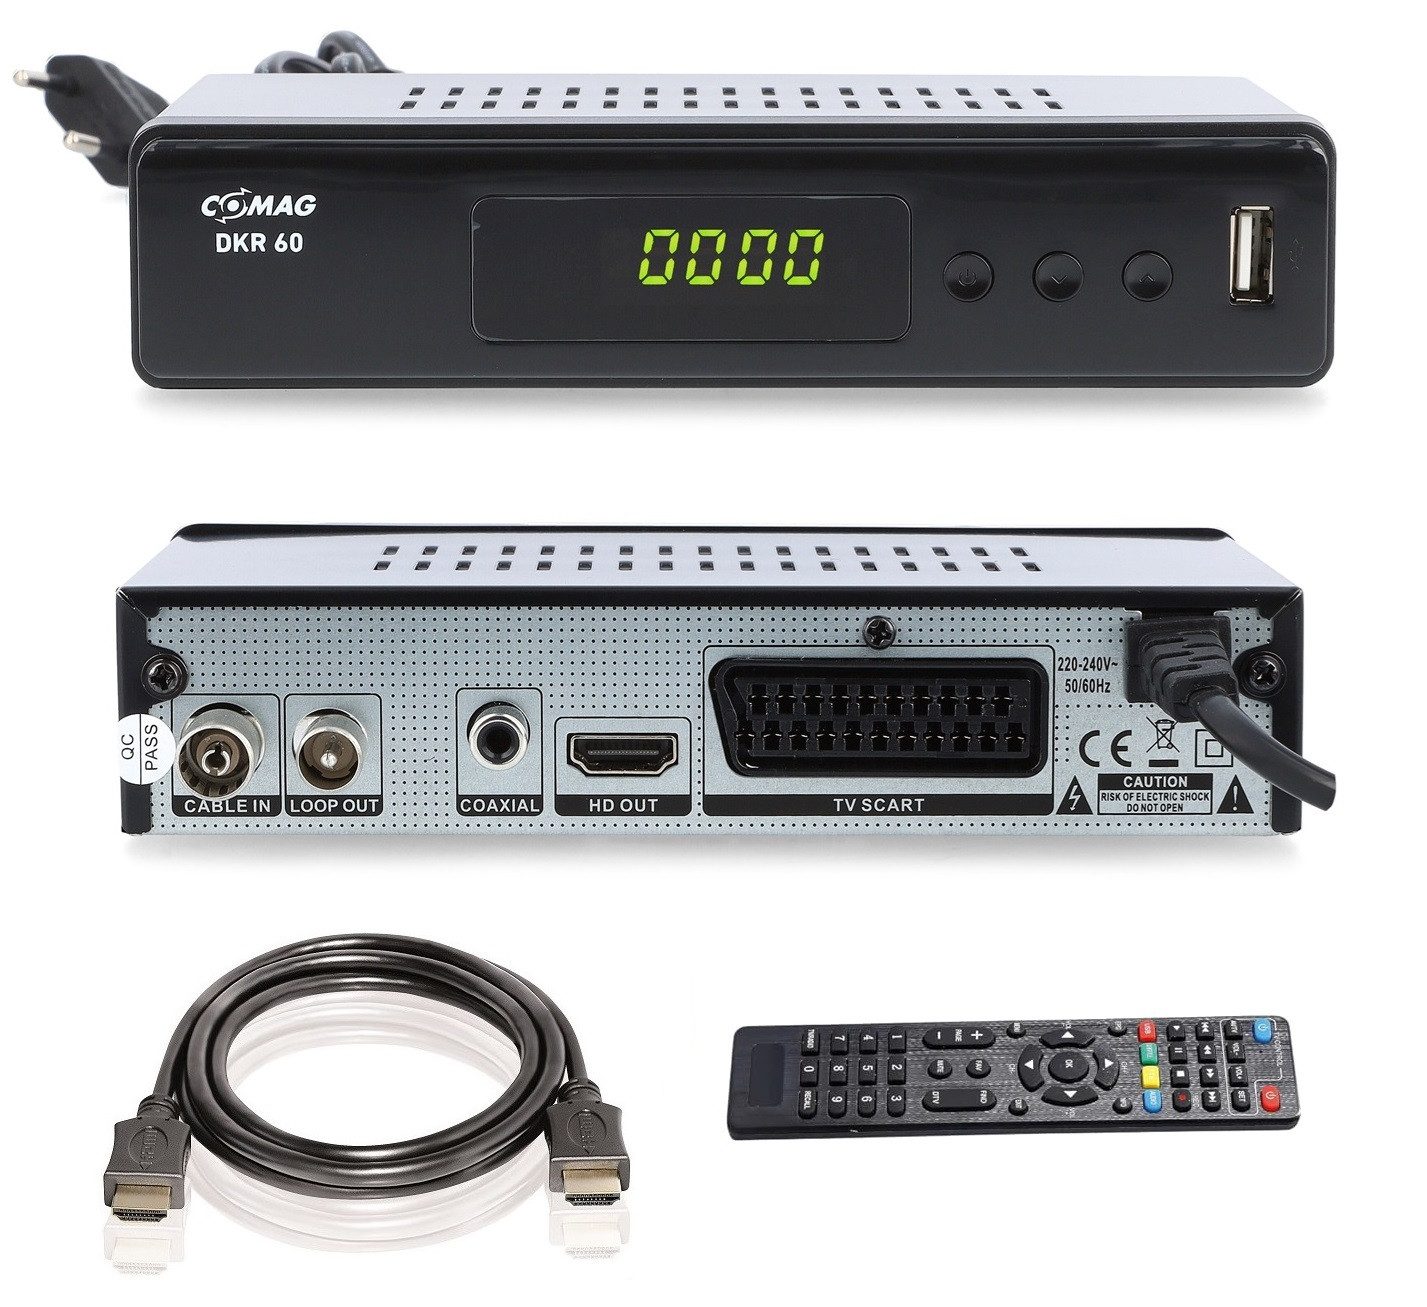 Comag COMAG DKR 60 HD digitaler Full HD Kabel-Receiver (PVR Ready, HDTV, Kabel-Receiver